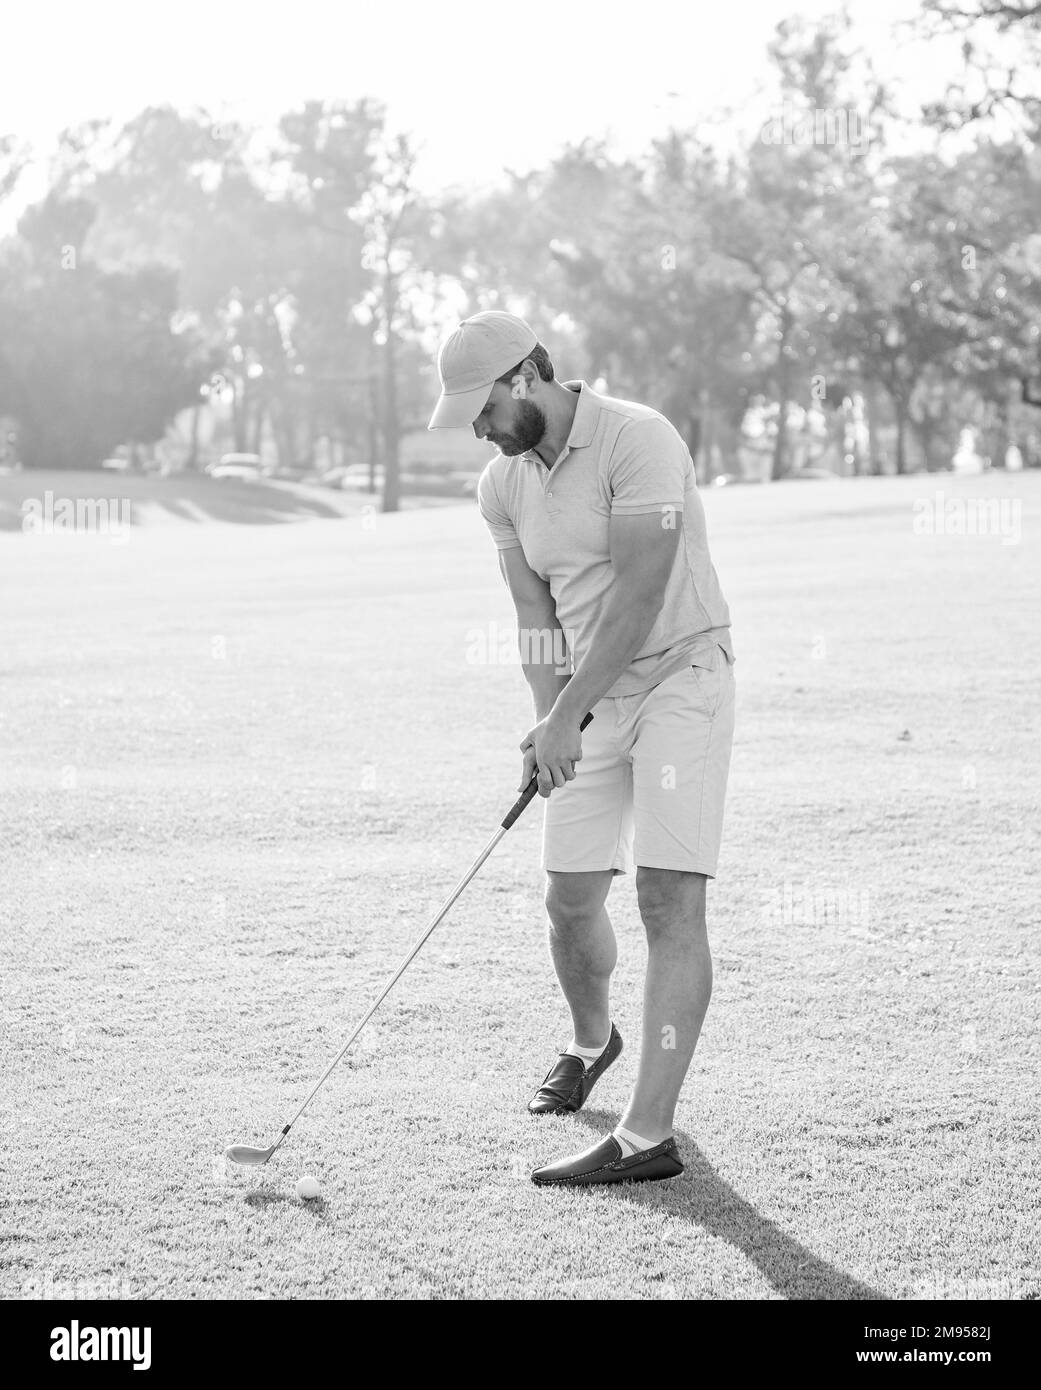 jouer au golfeur en casquette avec un club de golf, loisirs Banque D'Images